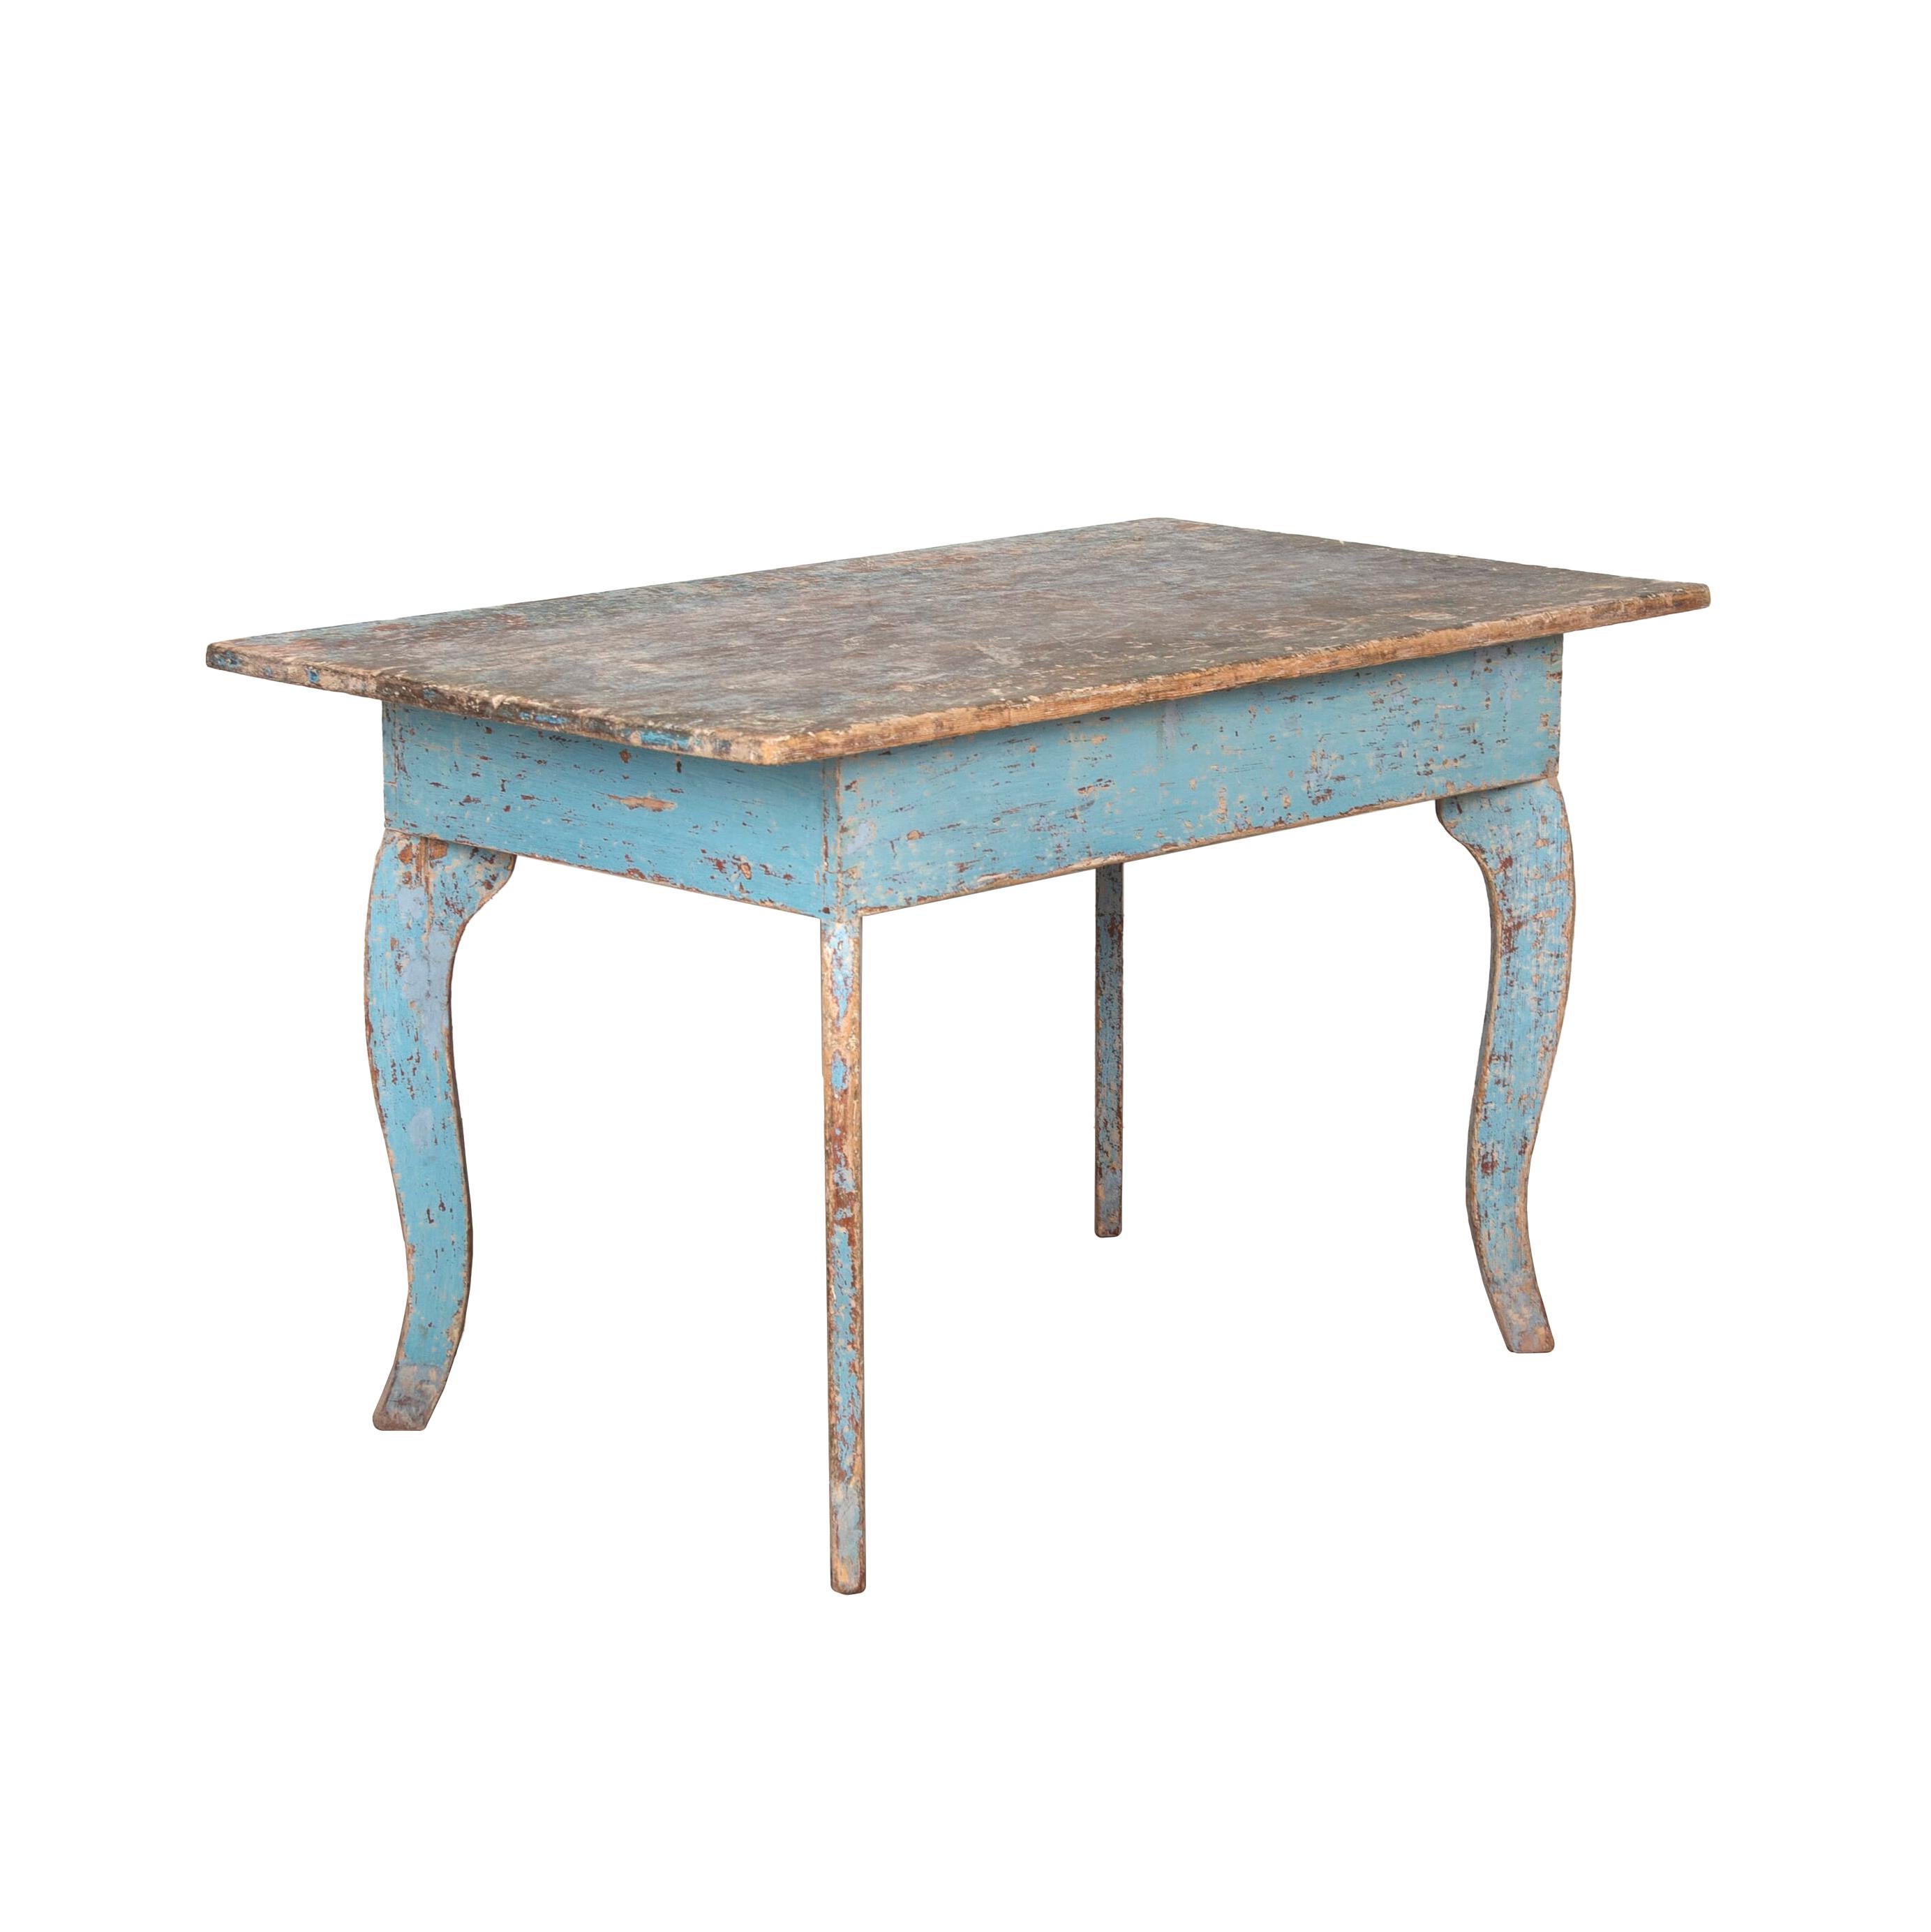 Charmante table provinciale suédoise du XIXe siècle. 
Le plateau est simple et plat et repose sur des pieds cabriole courbés. 
Il a été gratté pour obtenir une patine bleue secondaire.
 